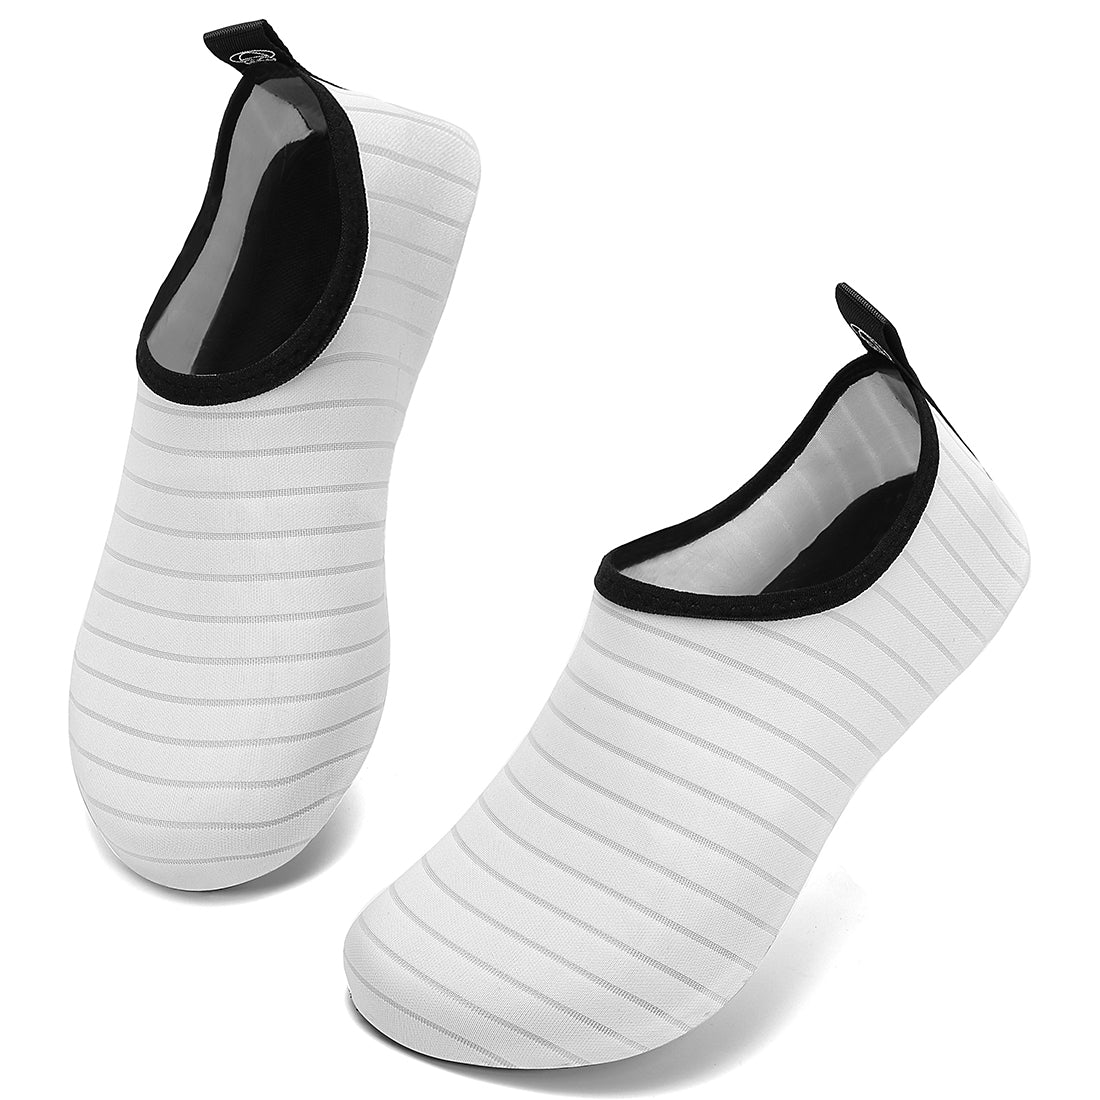 VIFUUR Hot Water Shoes for Men Women Vifuur